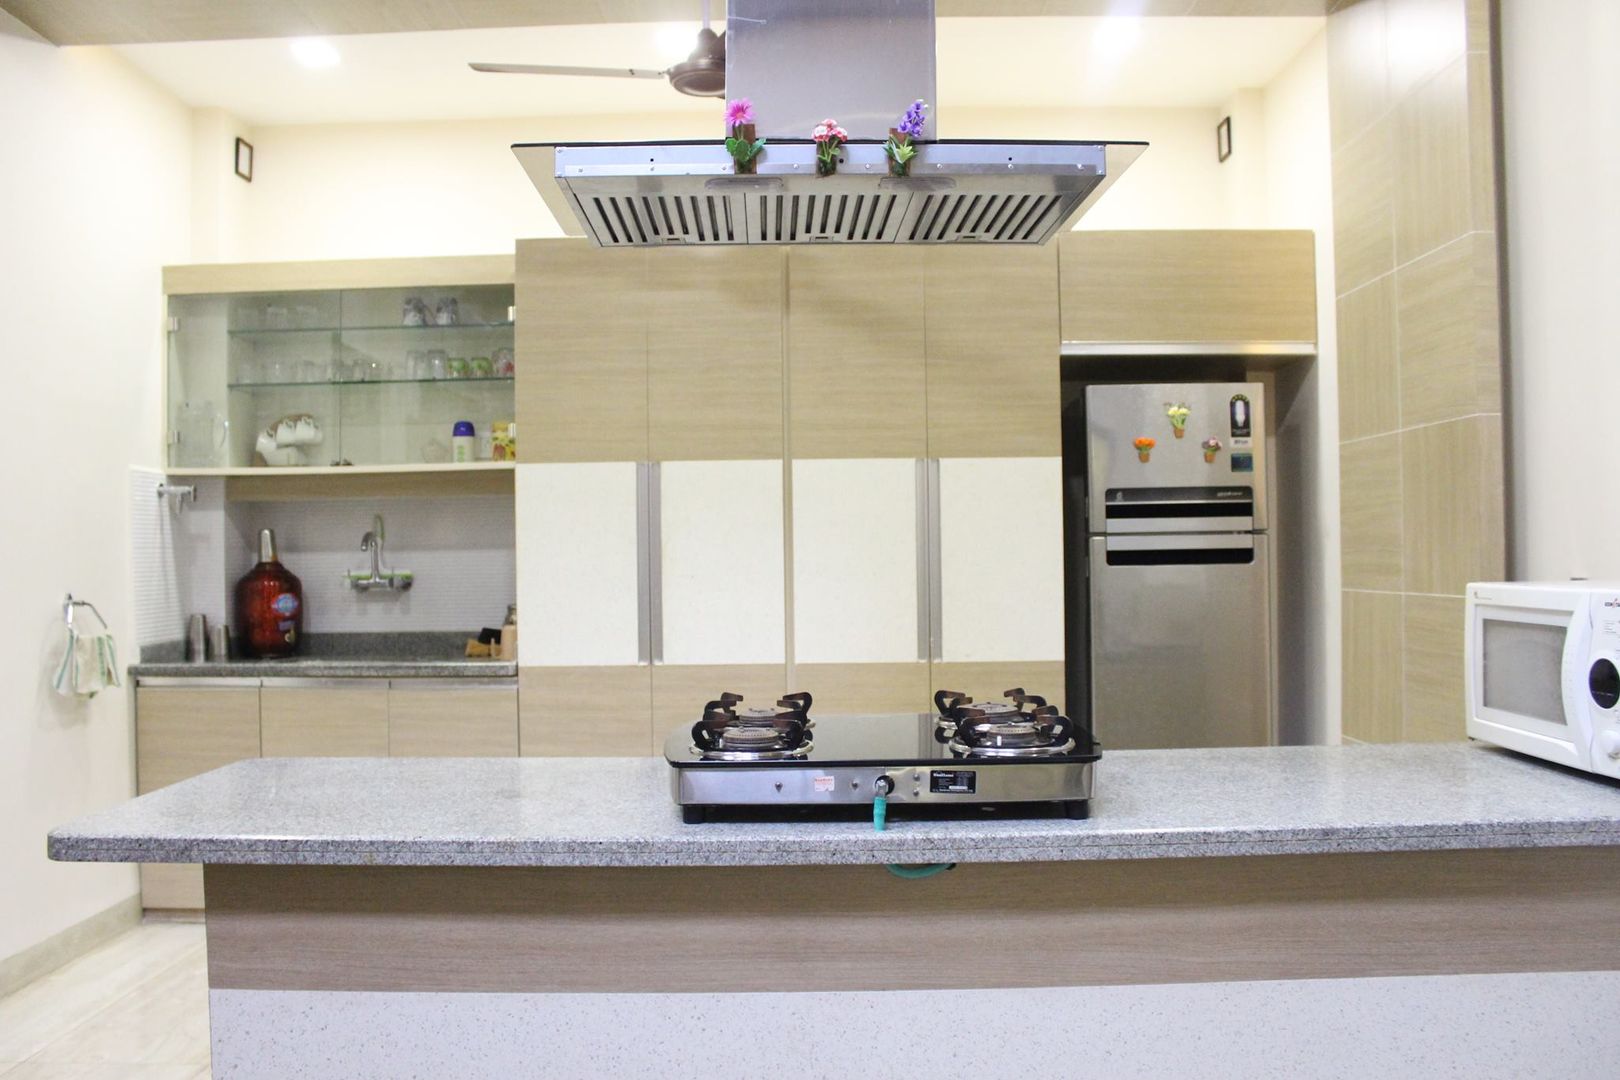 Duplex in Indore, Shadab Anwari & Associates. Shadab Anwari & Associates. Cocinas asiáticas